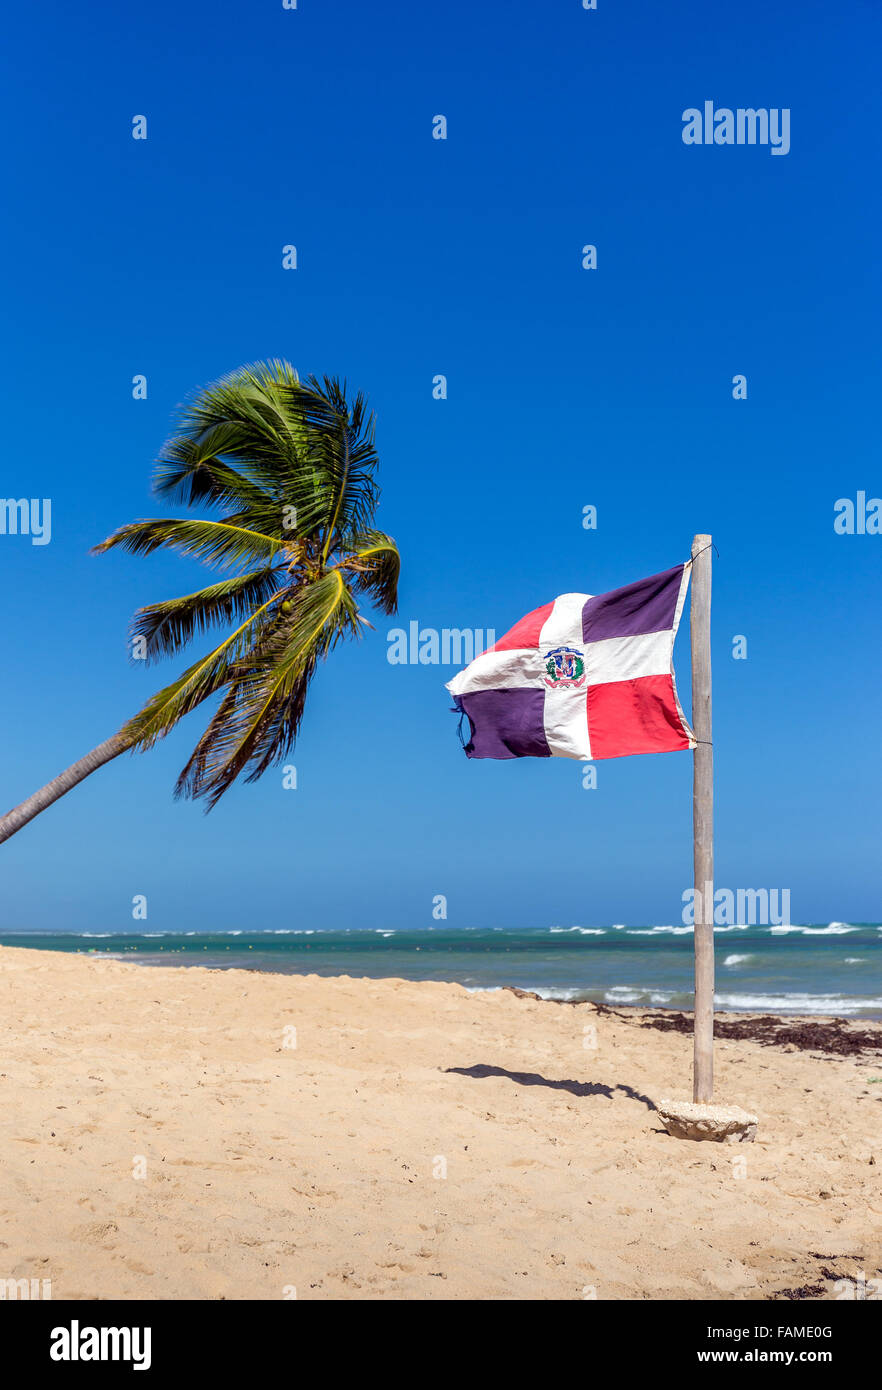 Playa de arena, palmeras y República Dominicana bandera Foto de stock